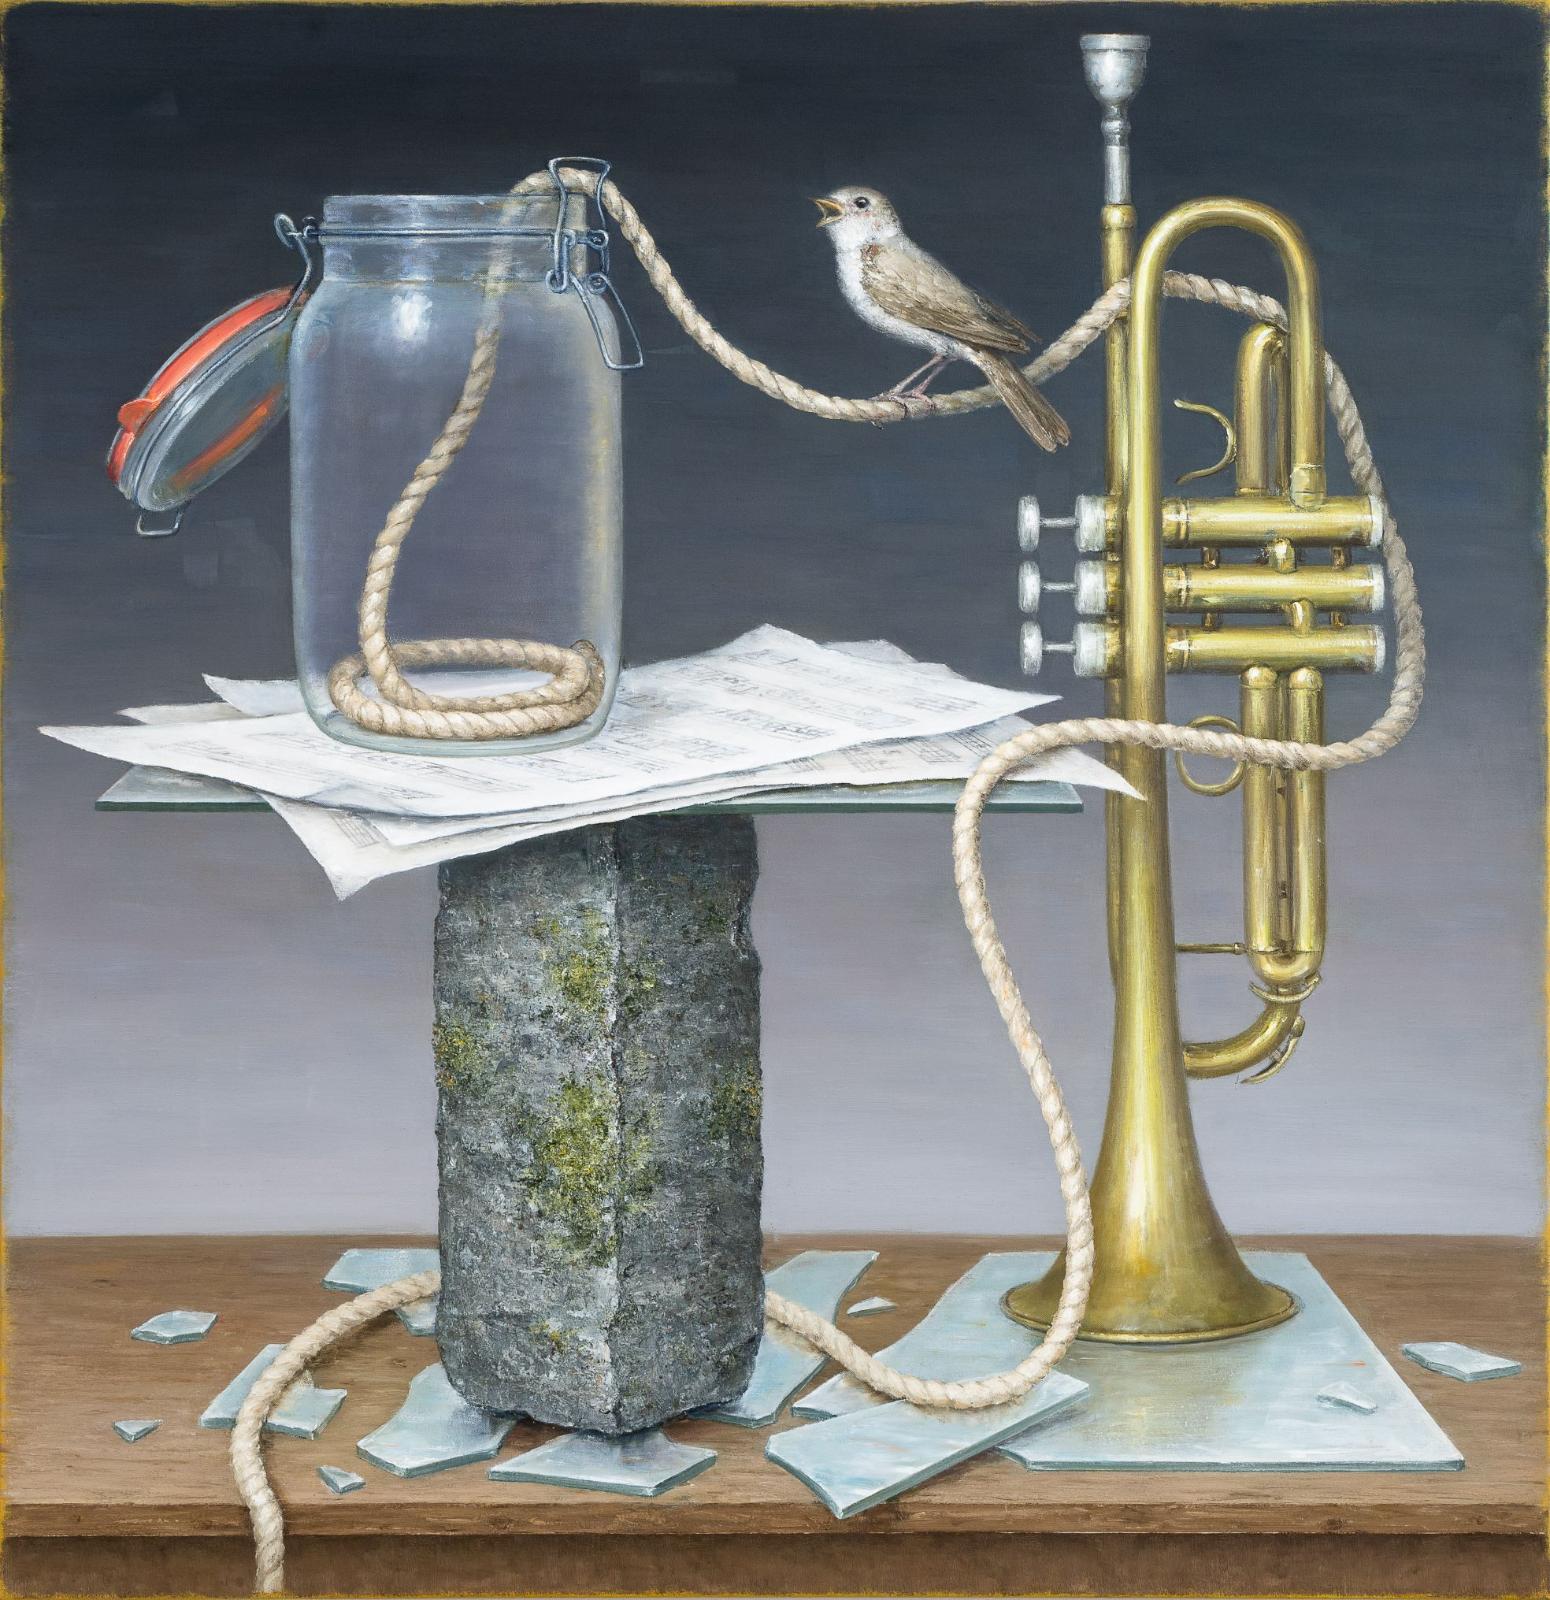 Mirko Schallenberg, Resonanz, 2020, Öl auf Leinwand, 165 cm x 160 cm